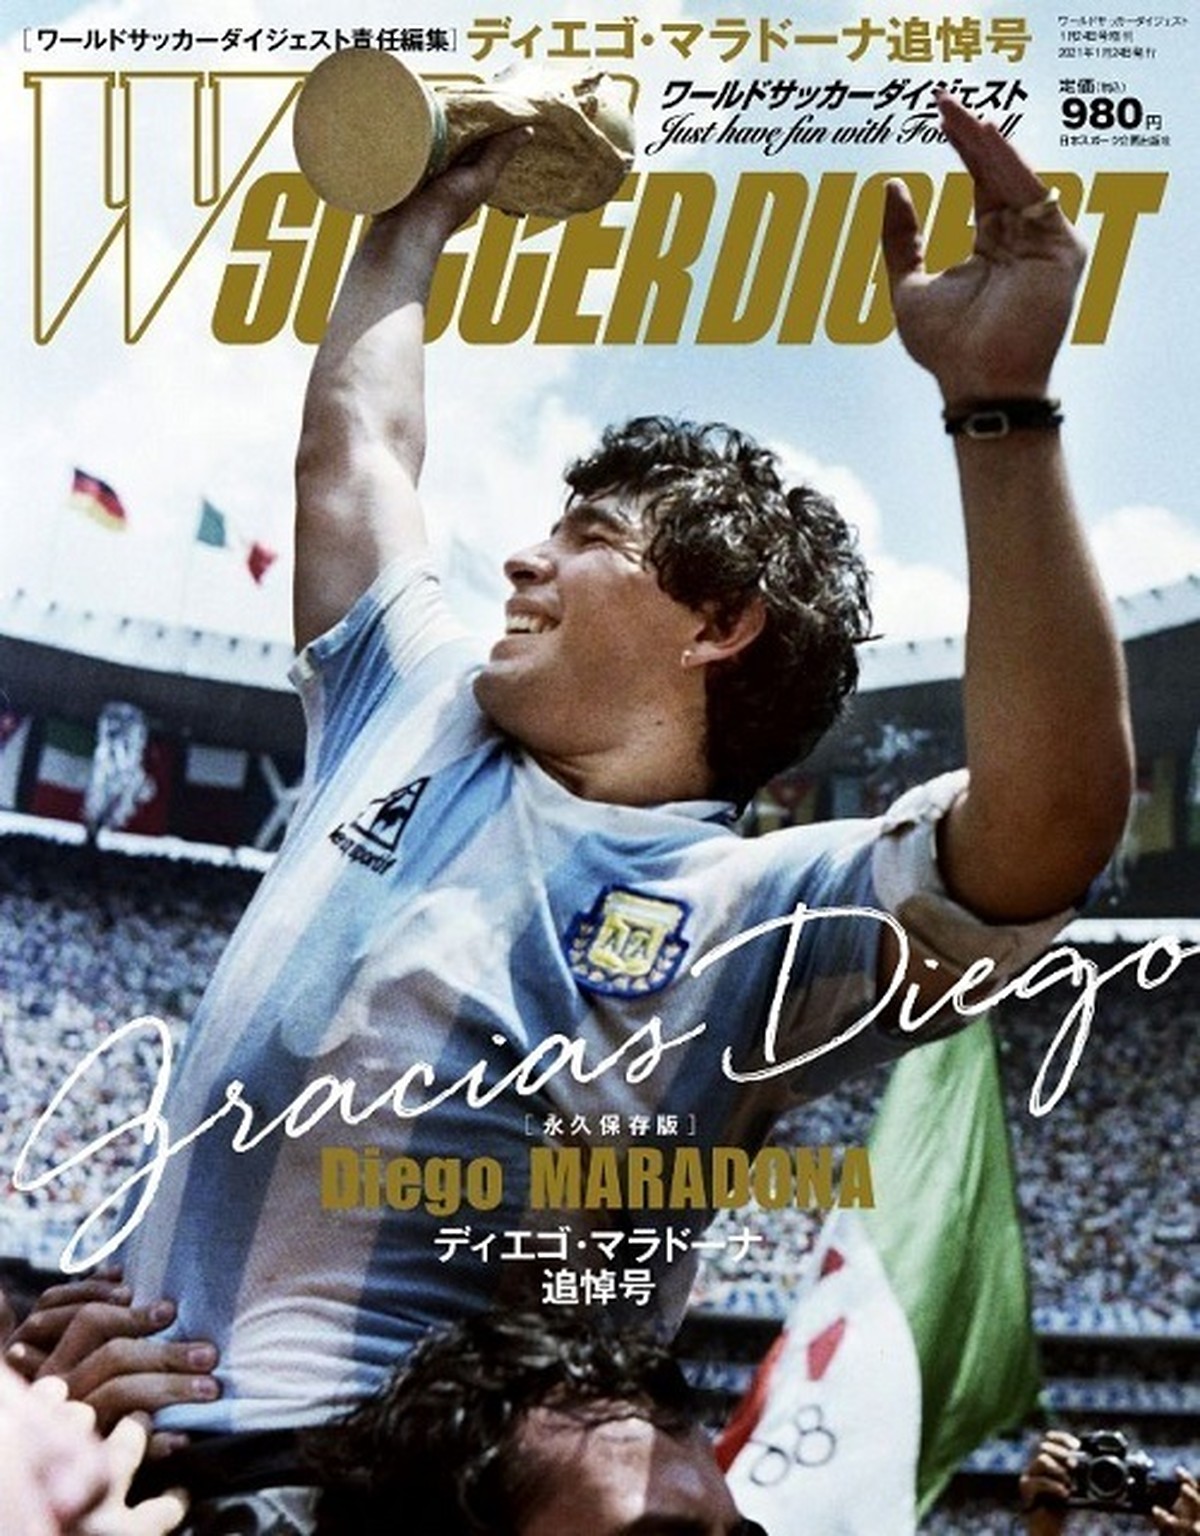 ディエゴ マラドーナ追悼号 日本スポーツ企画出版社 バックナンバー販売